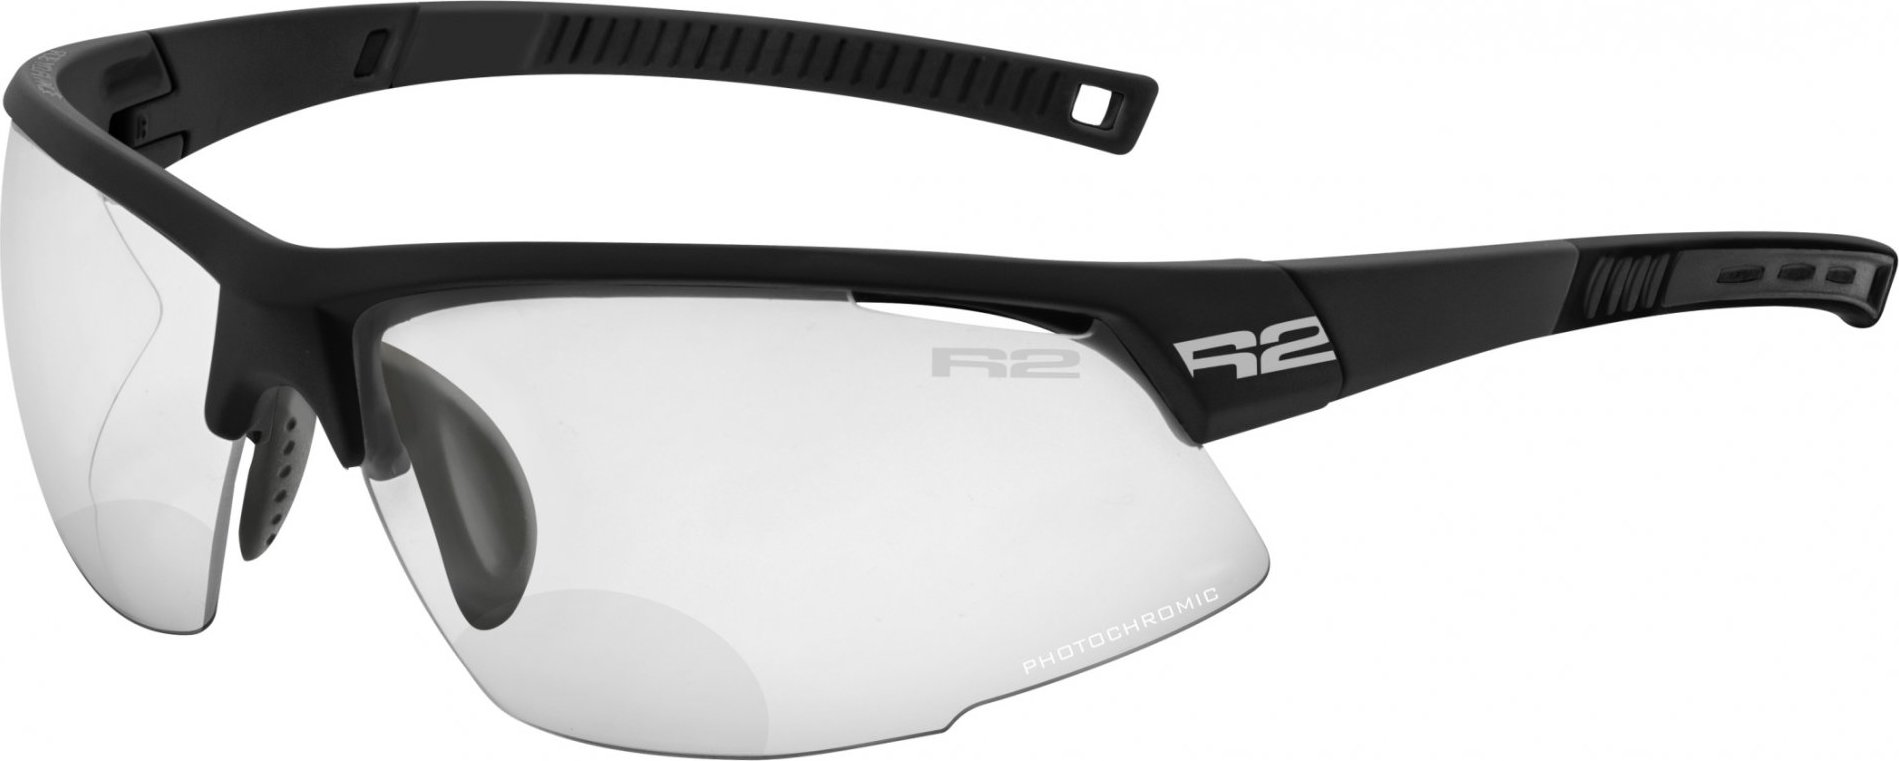 Sportovní dioptrické brýle R2 Racer černá +2,5